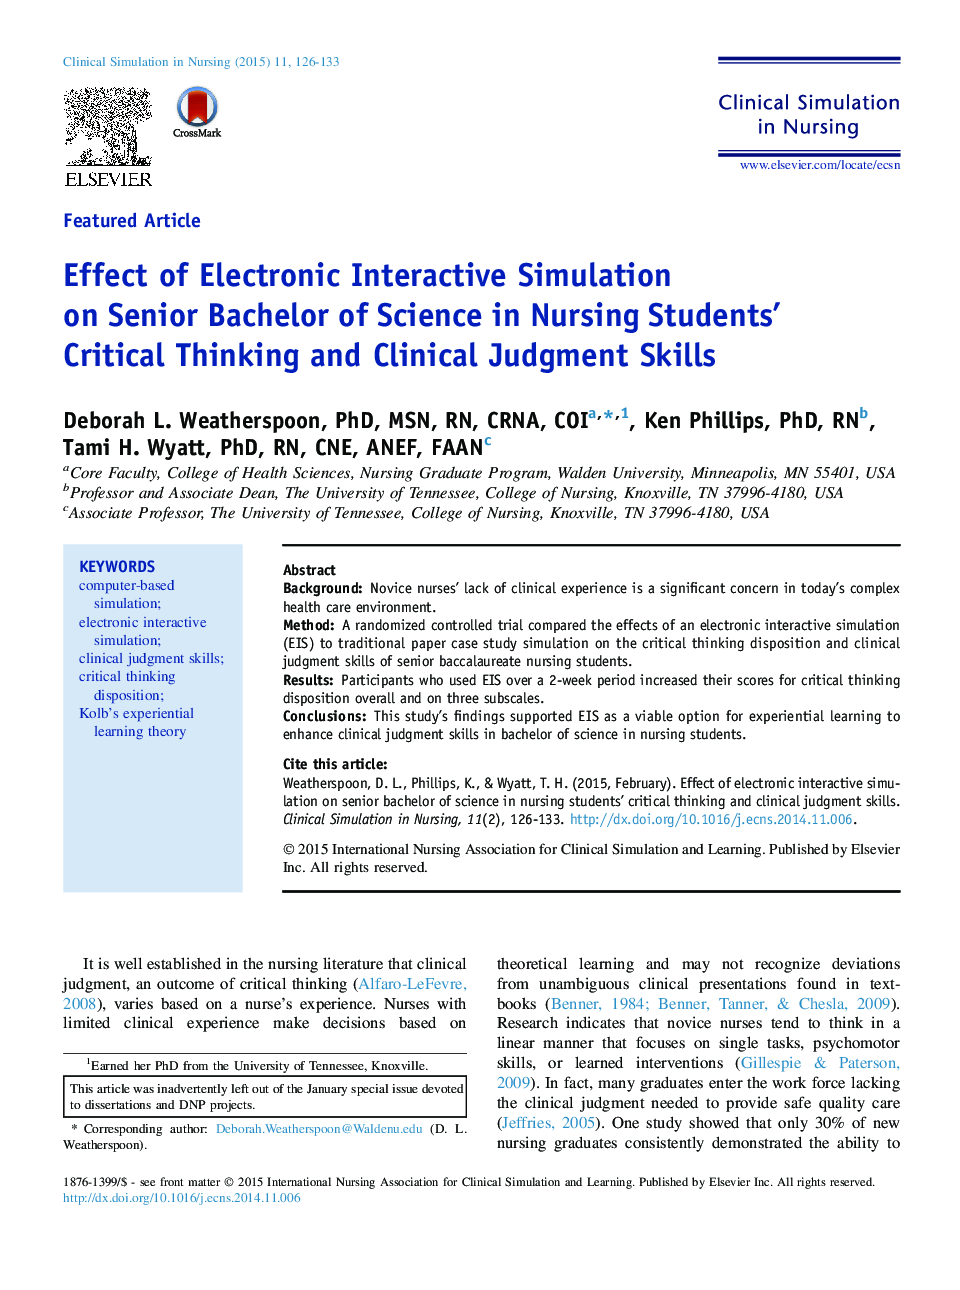 تأثیر شبیه سازی تعاملی الکترونیکی در رشته کارشناسی ارشد در تفکر انتقادی دانشجویان پرستاری و مهارت های قضاوت بالینی 